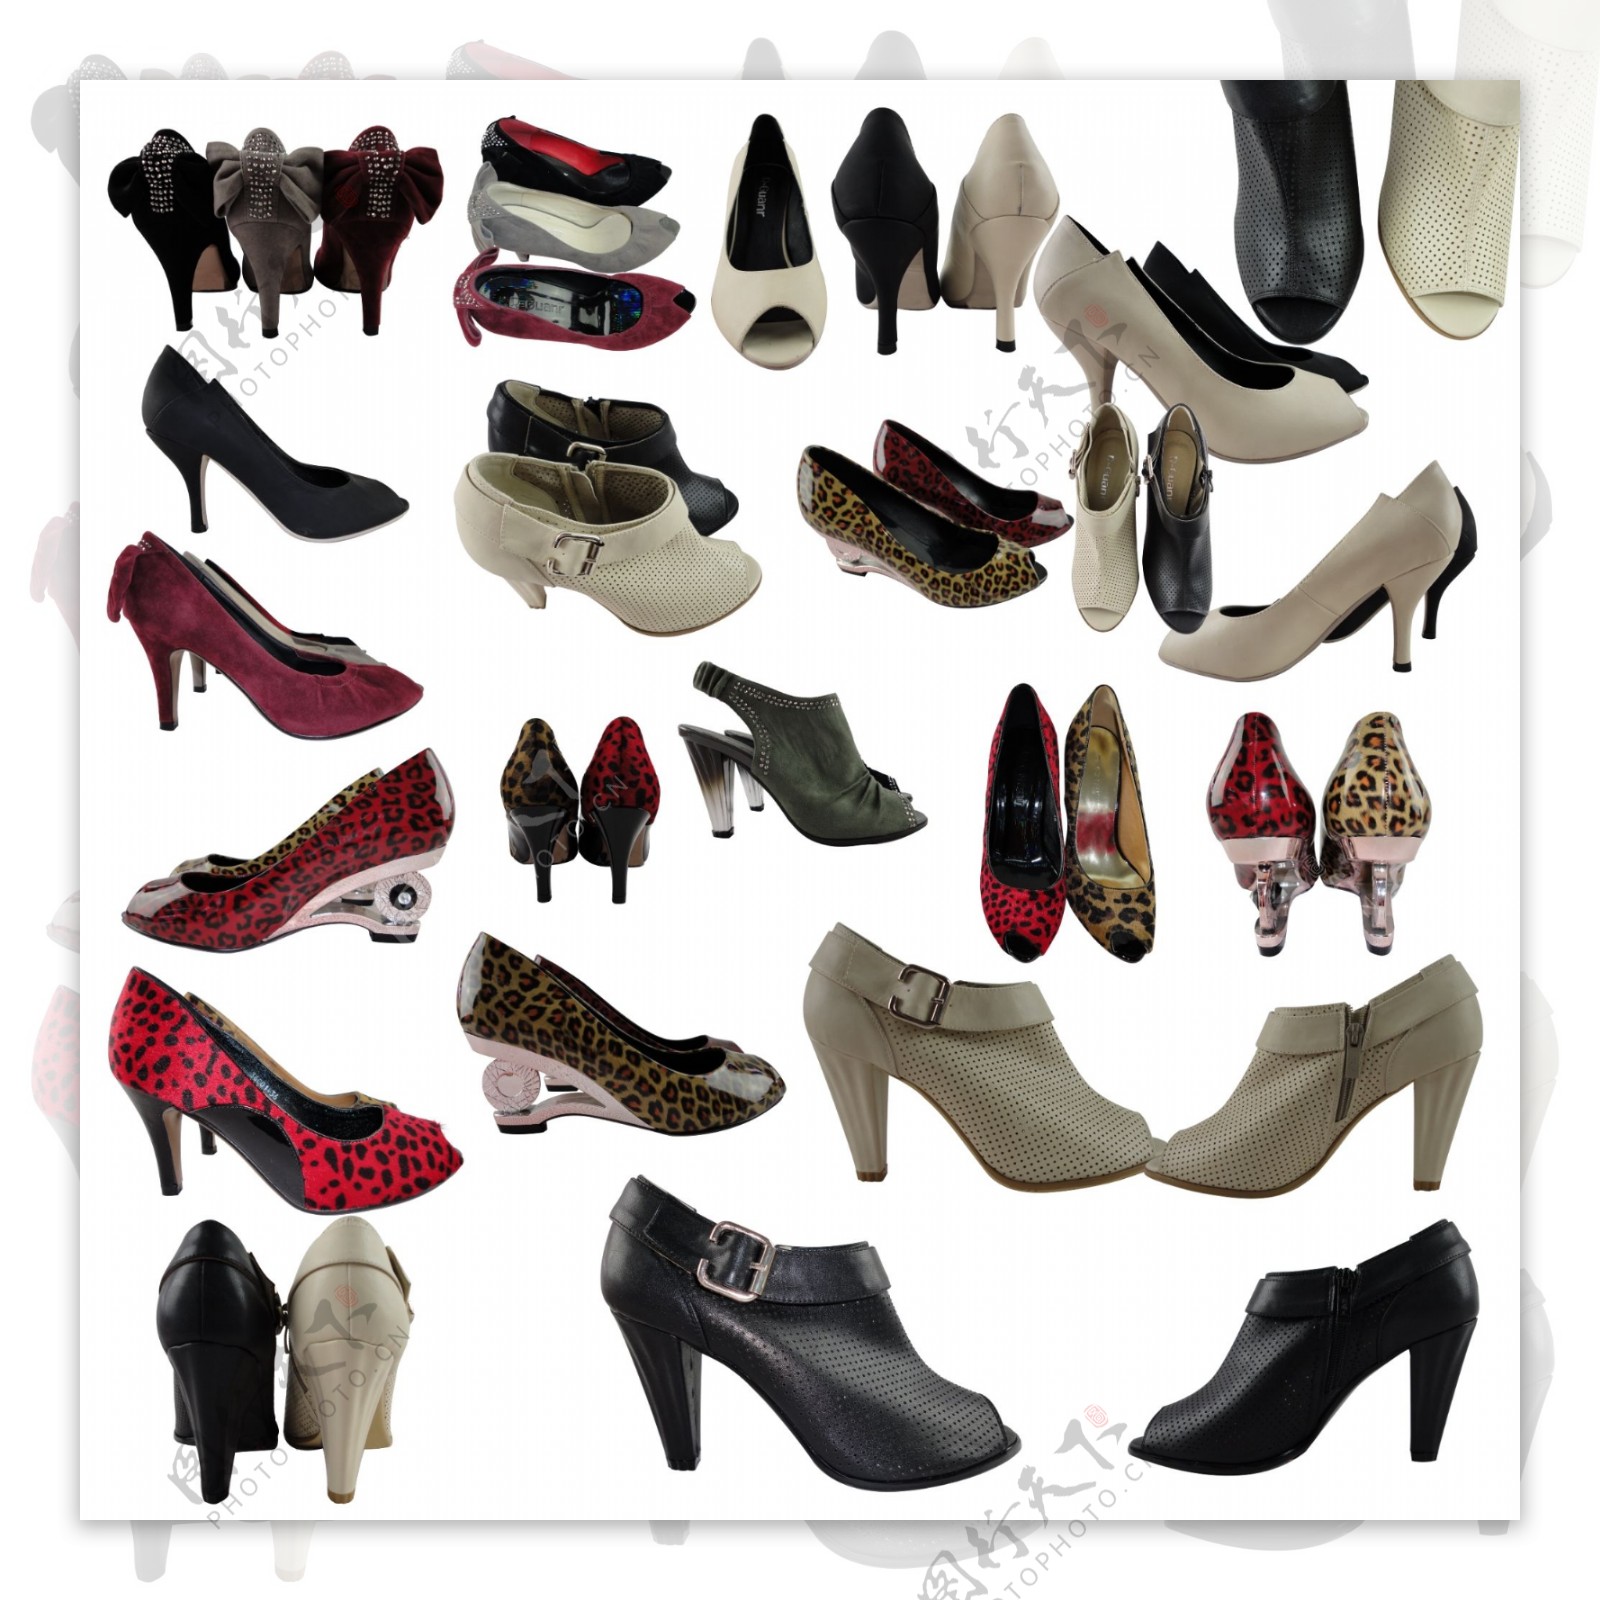 不同款式各种造型的女鞋勾图分层1psd图片